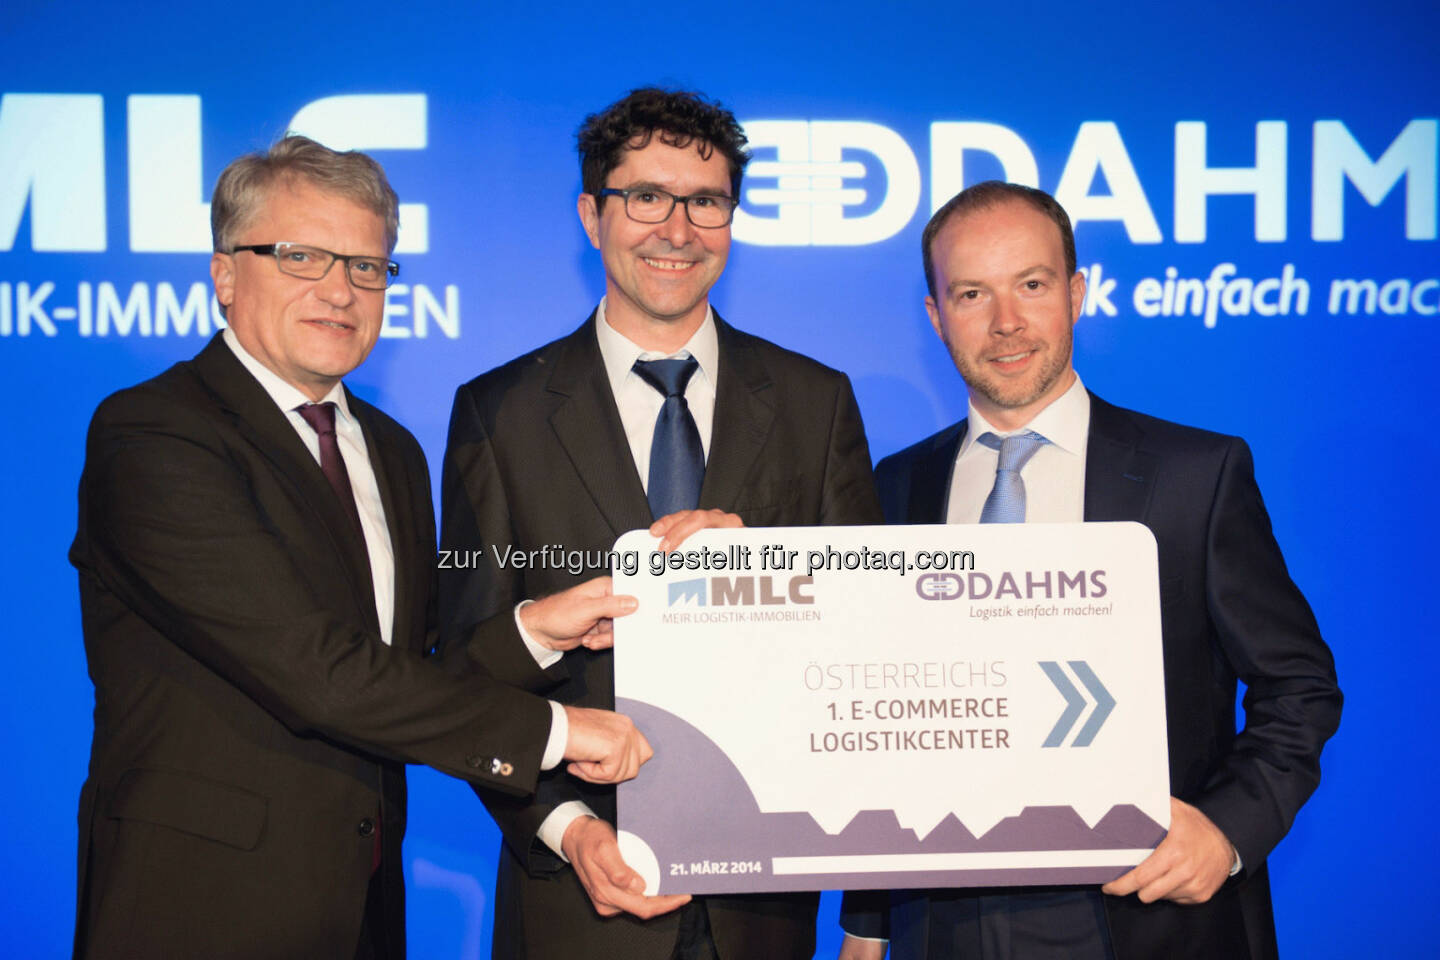 Logistikimmobilienentwickler Alois Meir überreicht Oliver Dahms die symbolische Key Card zum Start des E-Commerce Logistikcenters; Bürgermeister Linz Klaus Luger 